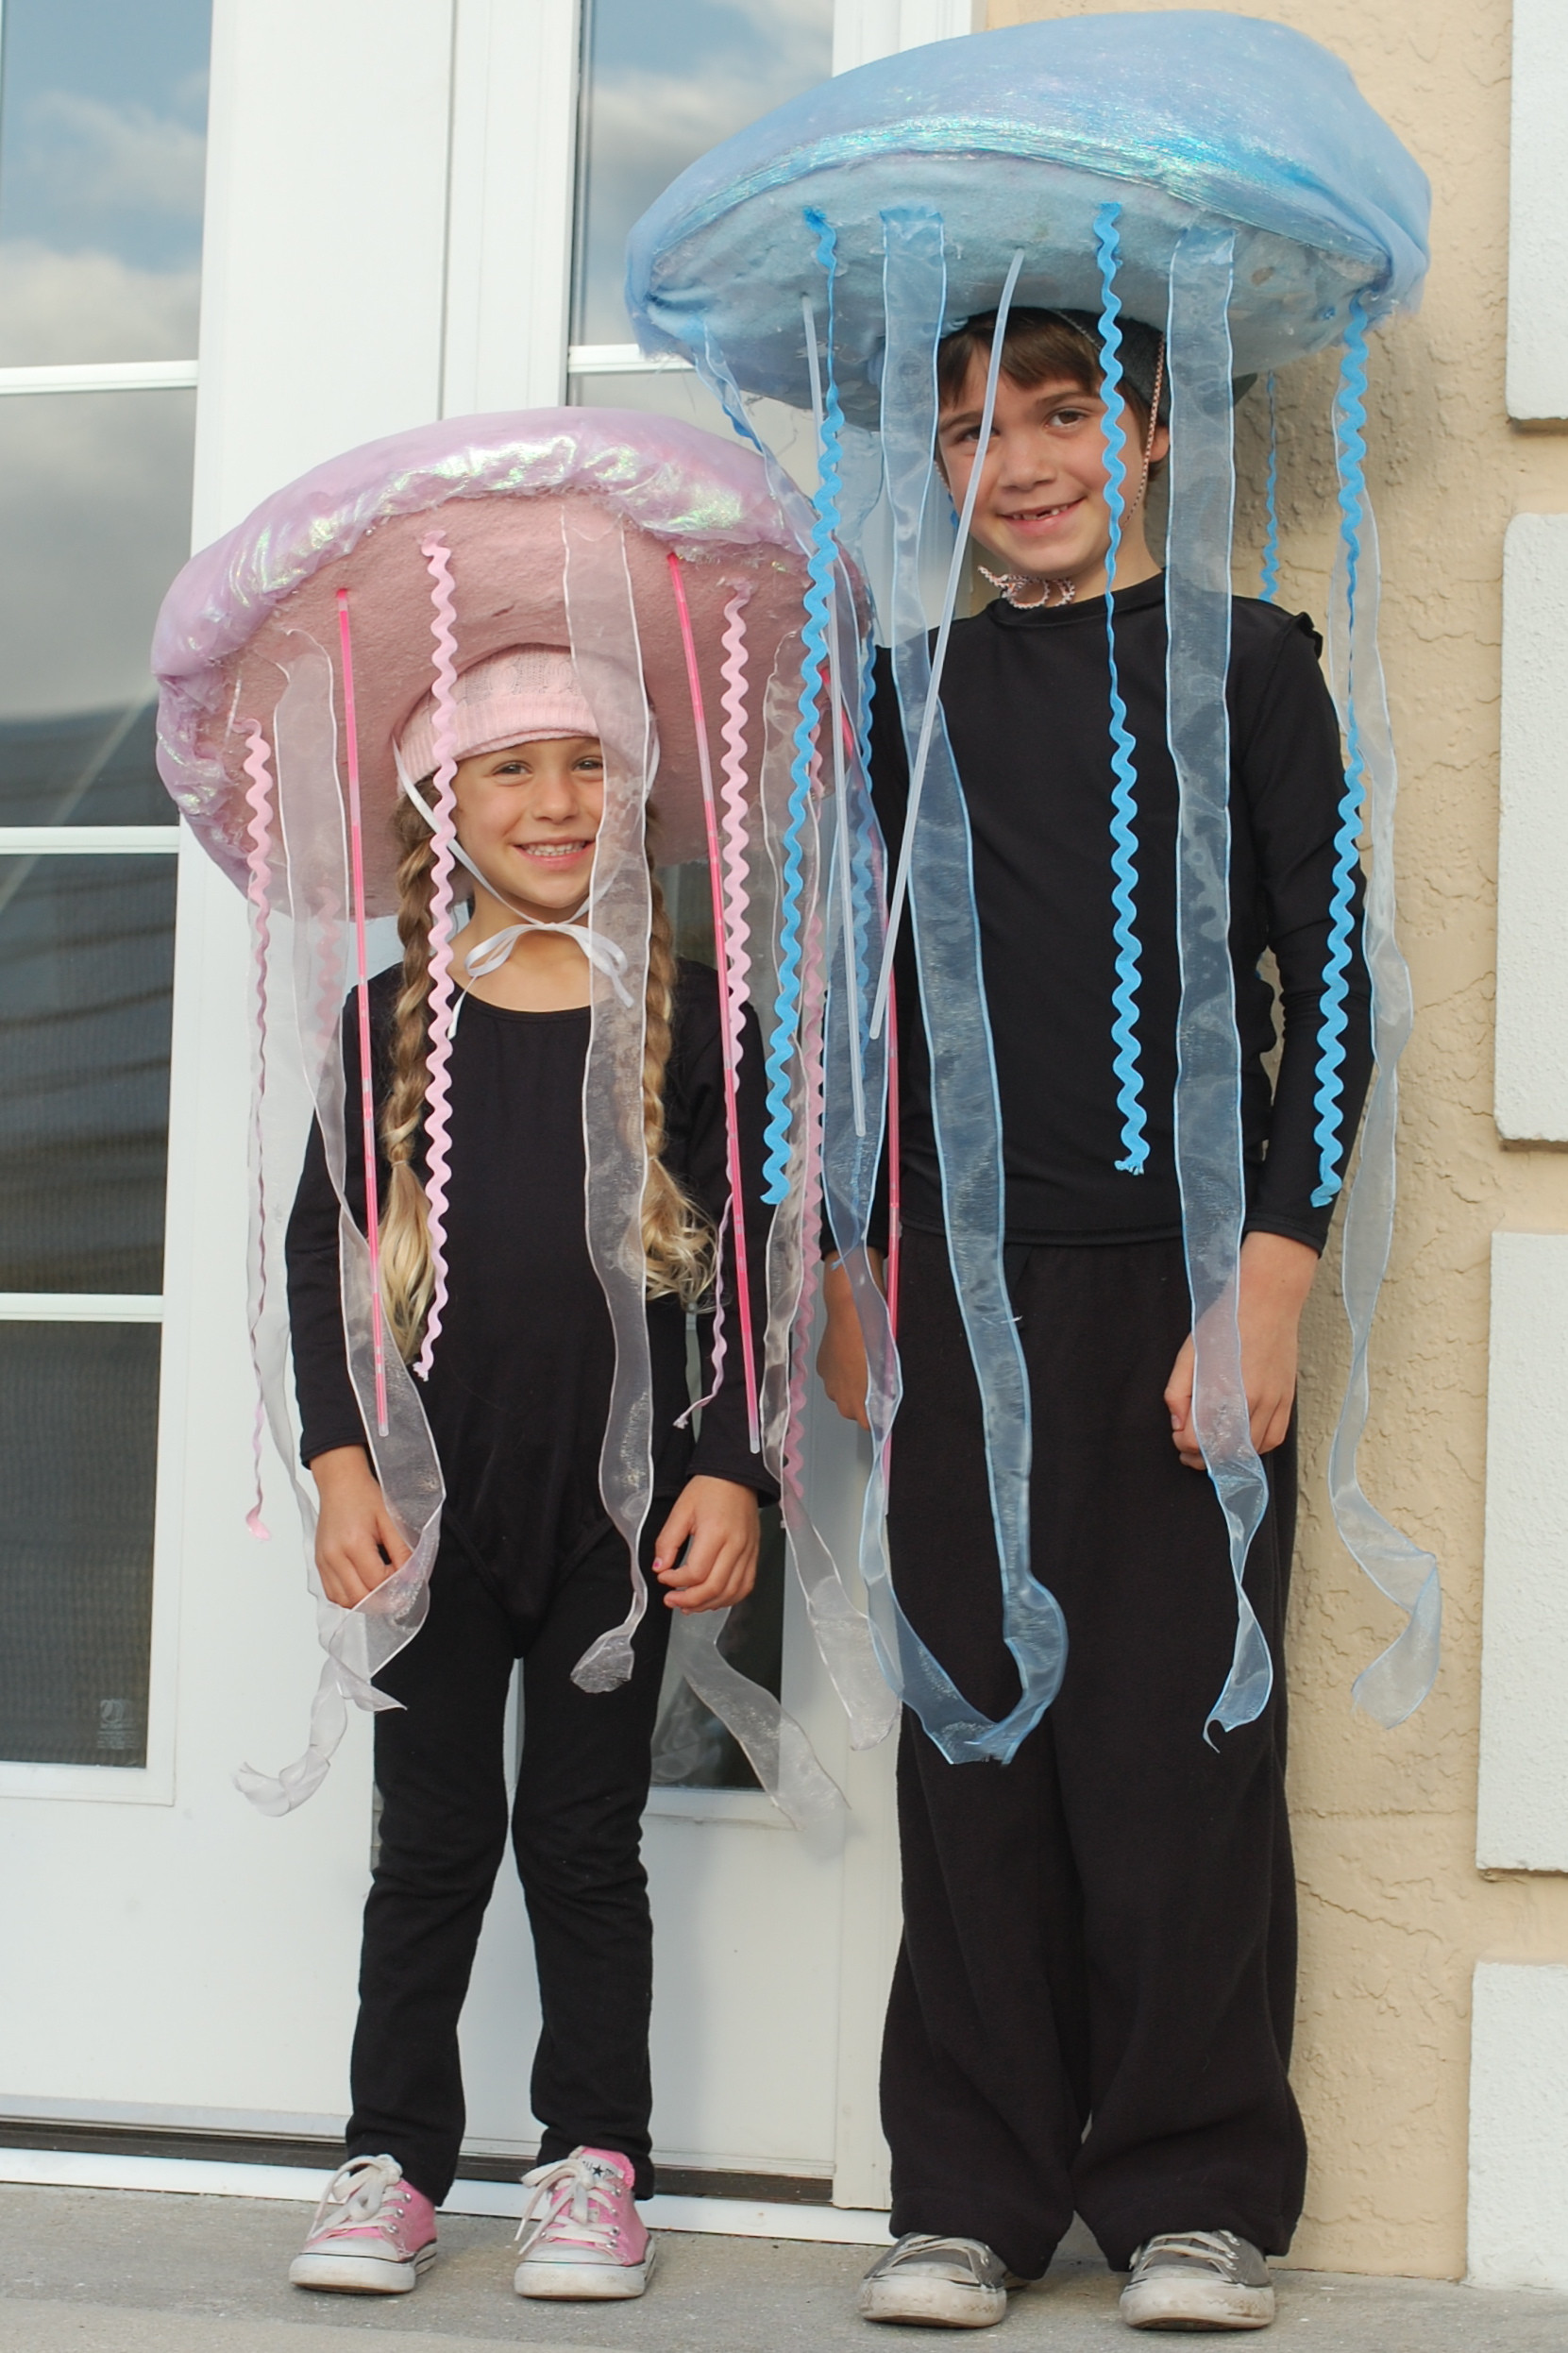 Jellyfish Costume DIY
 Glow in the Dark Jellyfish Costume Tutorial